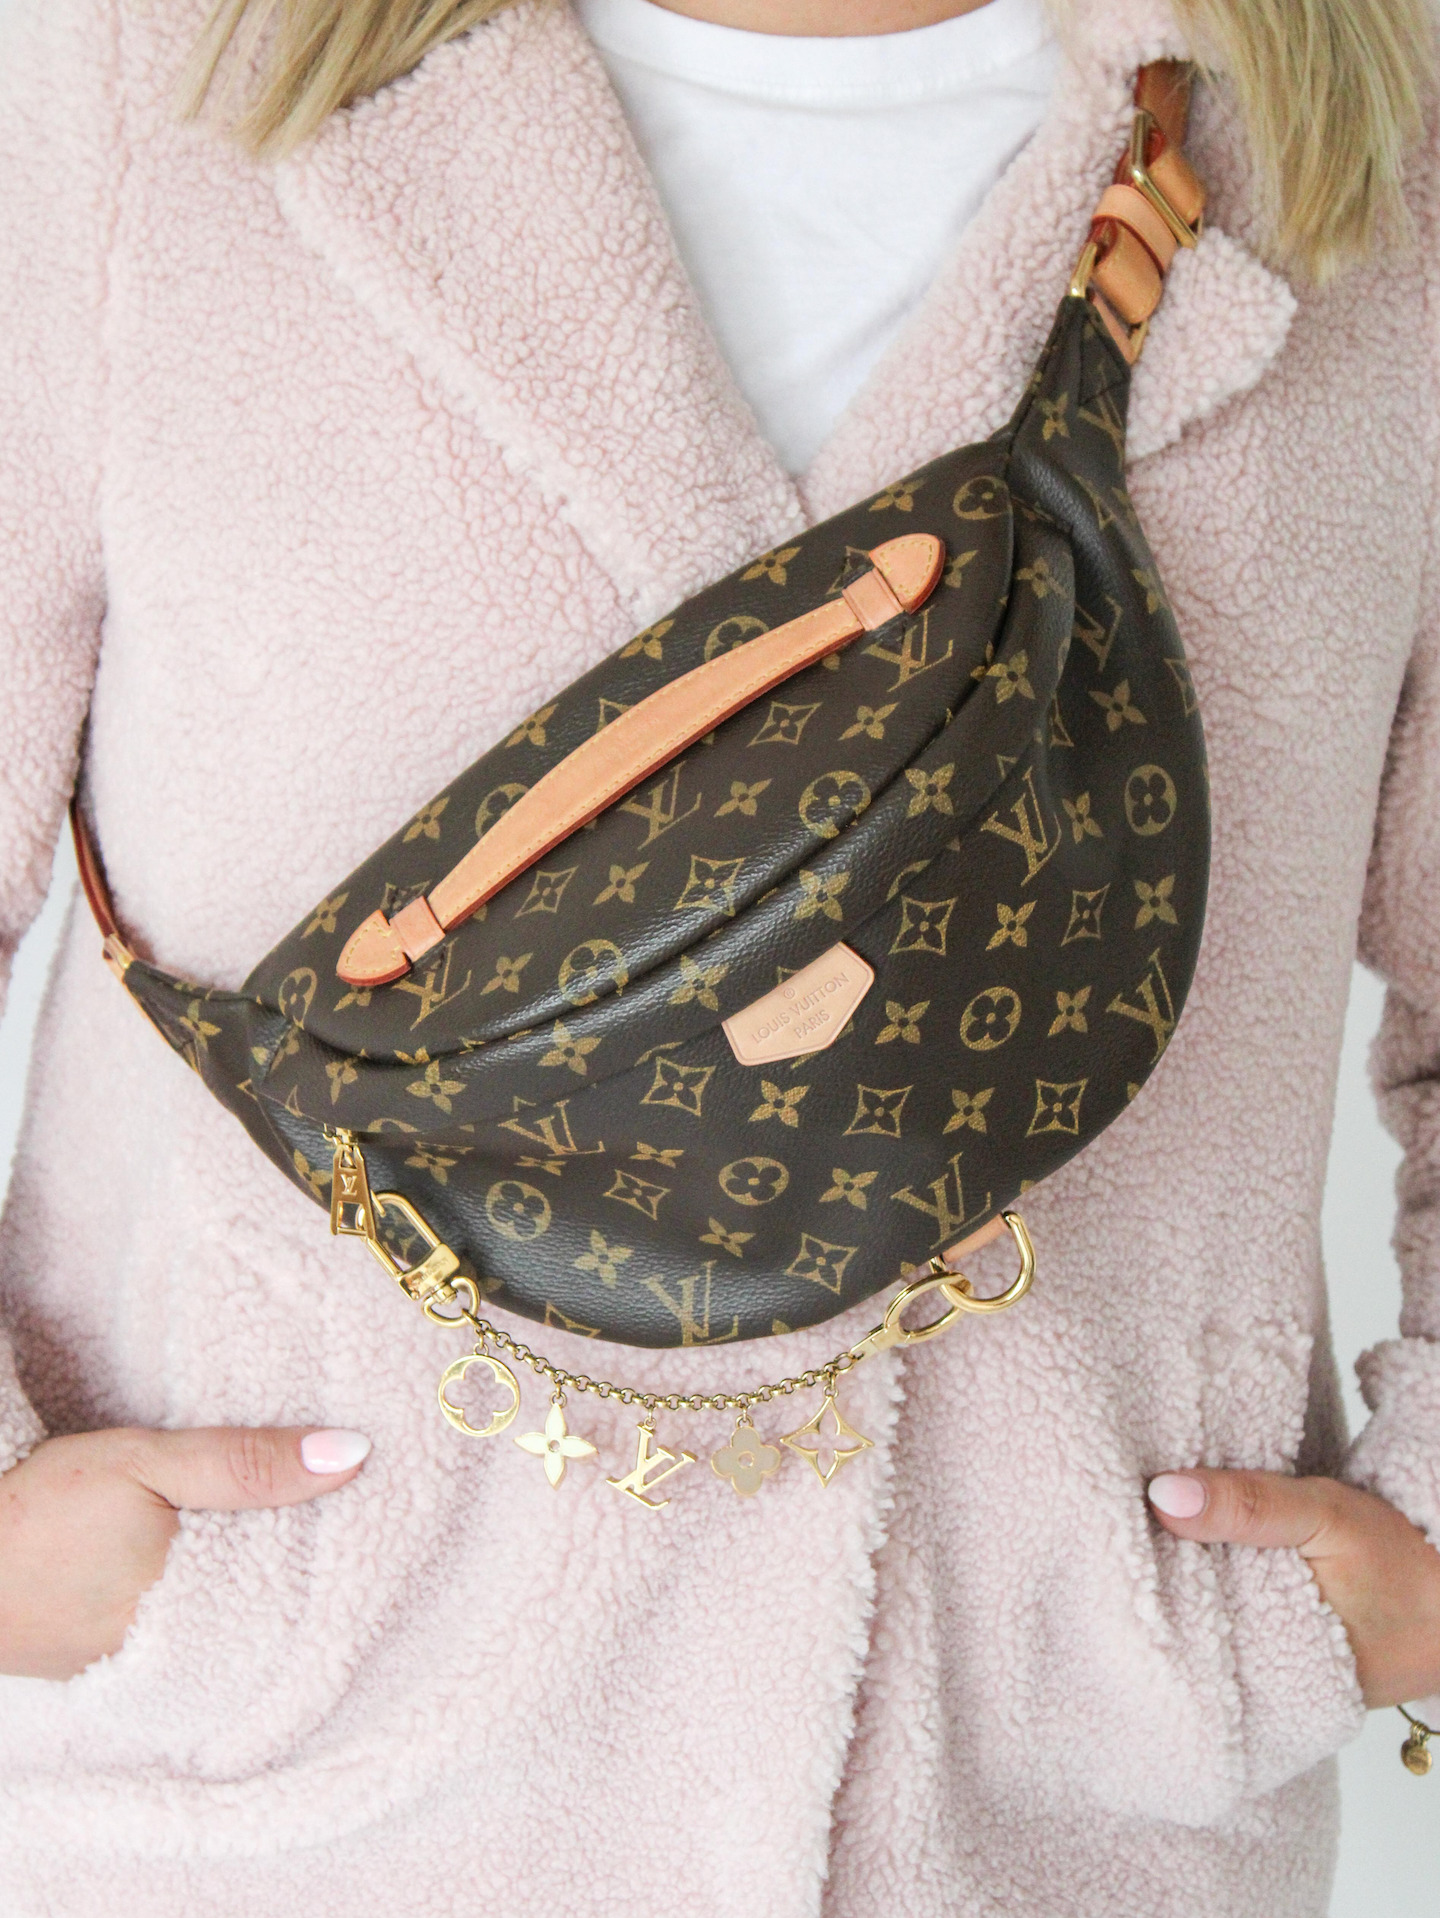 Louis Vuitton Authenticated Bag Charm